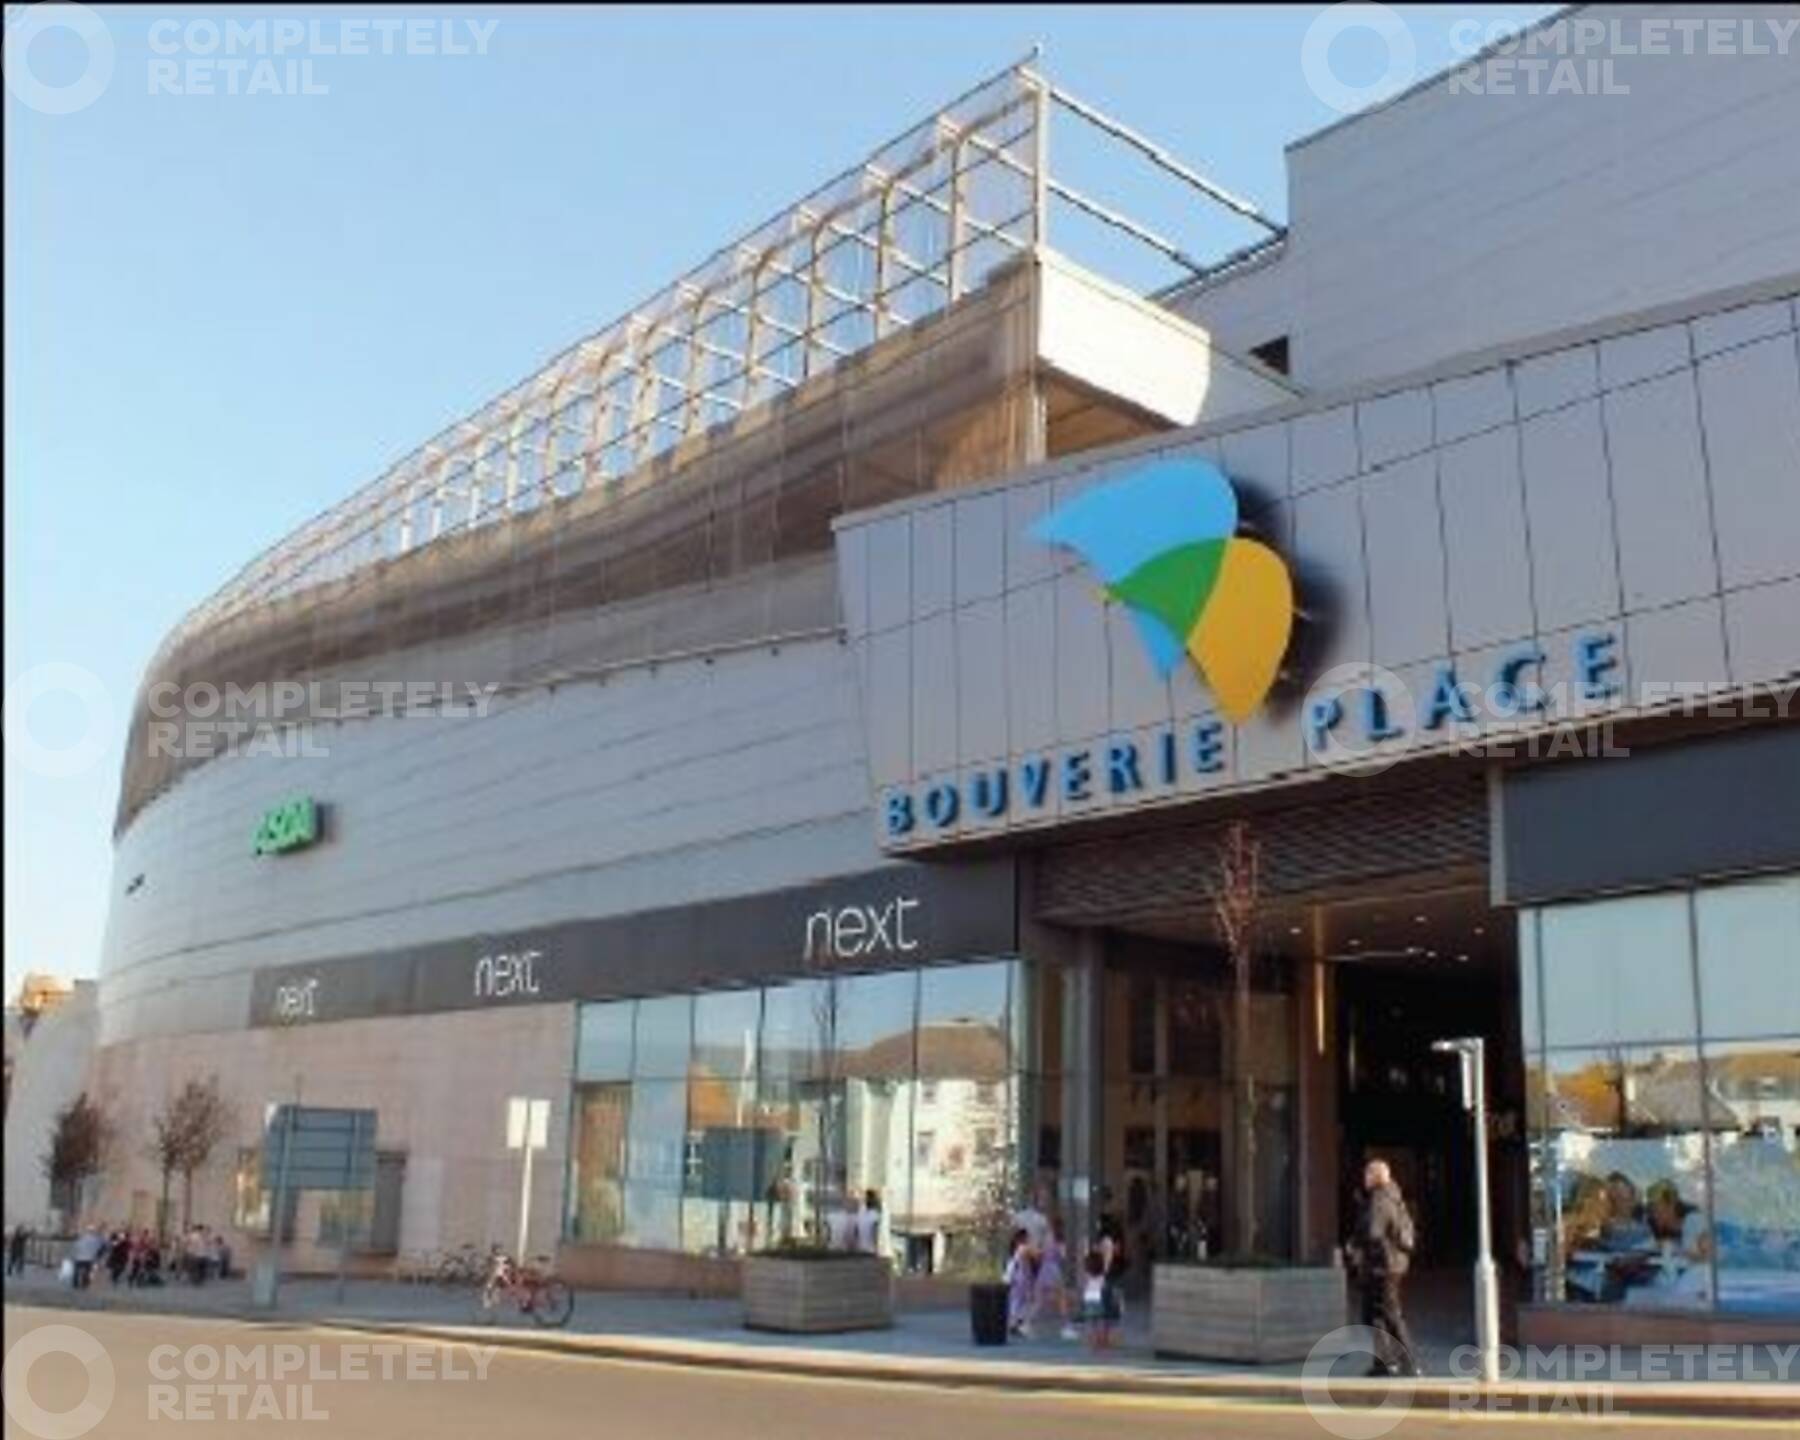 Bouverie Place Shopping Centre